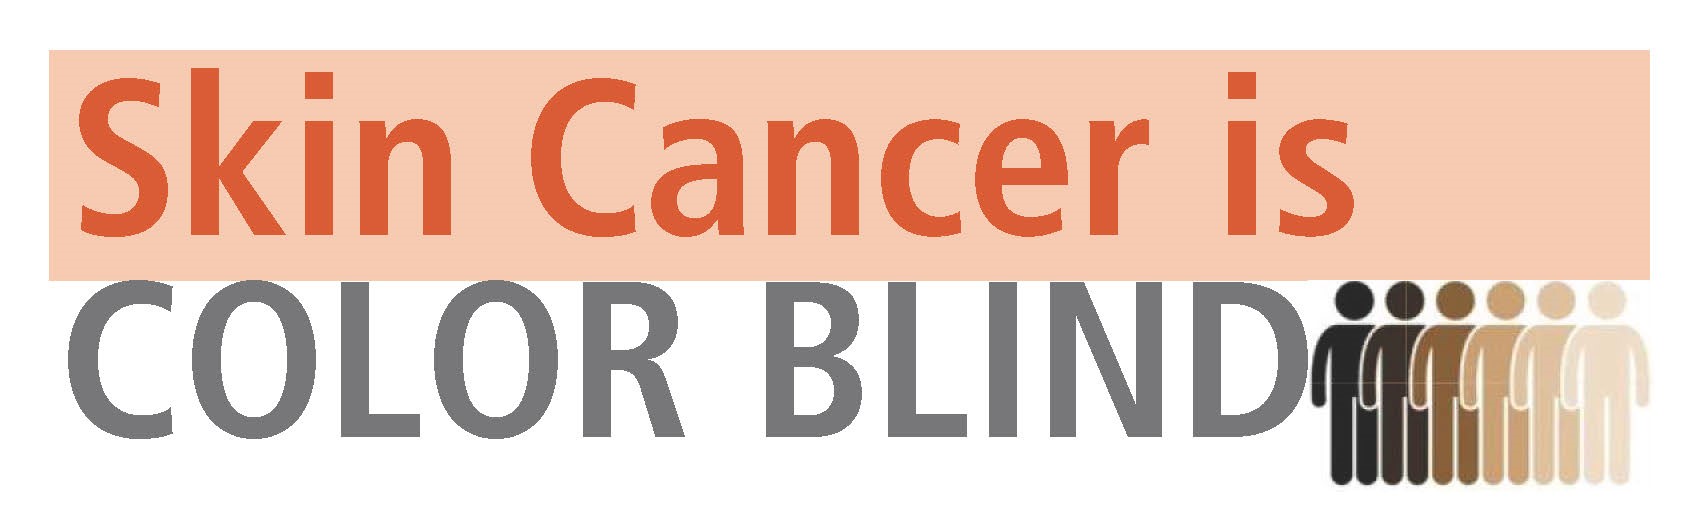 Skin Cancer is color blind